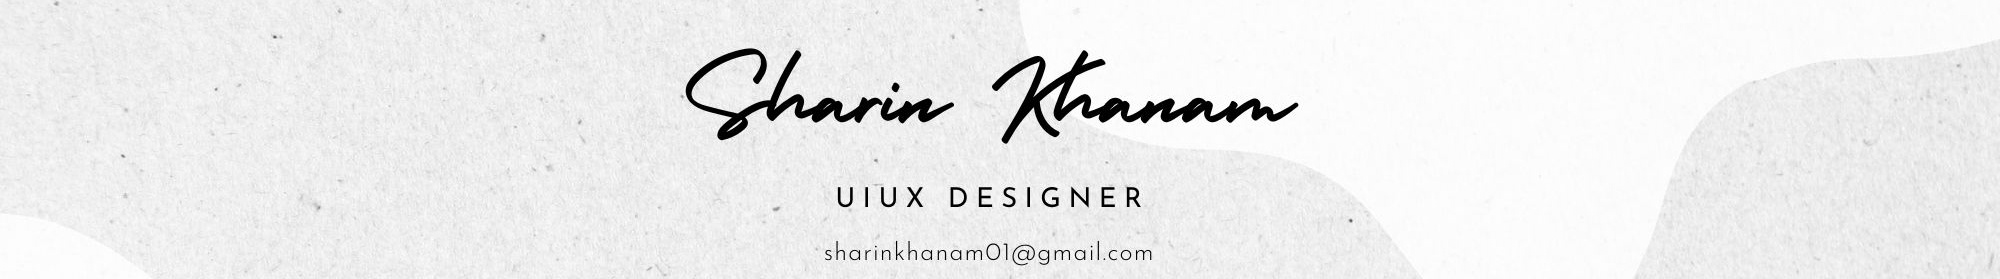 Sharin Khanam のプロファイルバナー